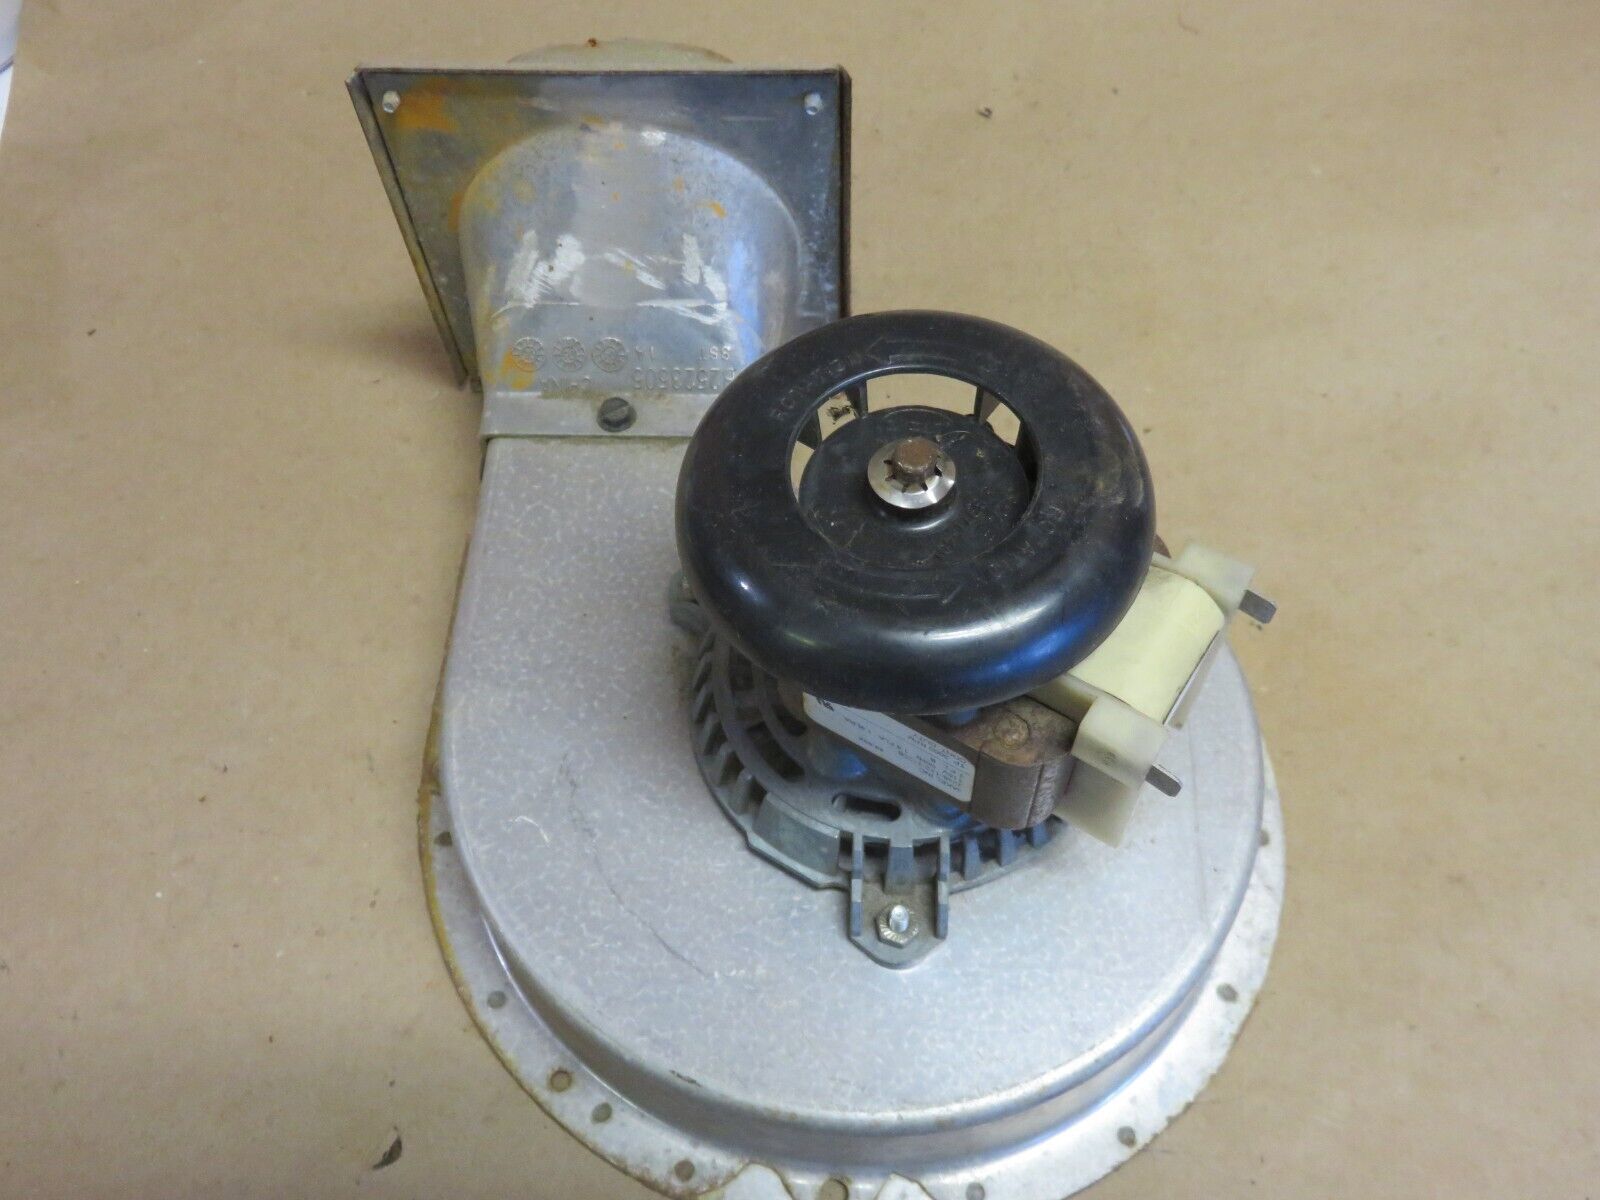 Jakel  119276-00 Draft  Inducer Motor Blower Part # 0131M00002P Goodman Furnace